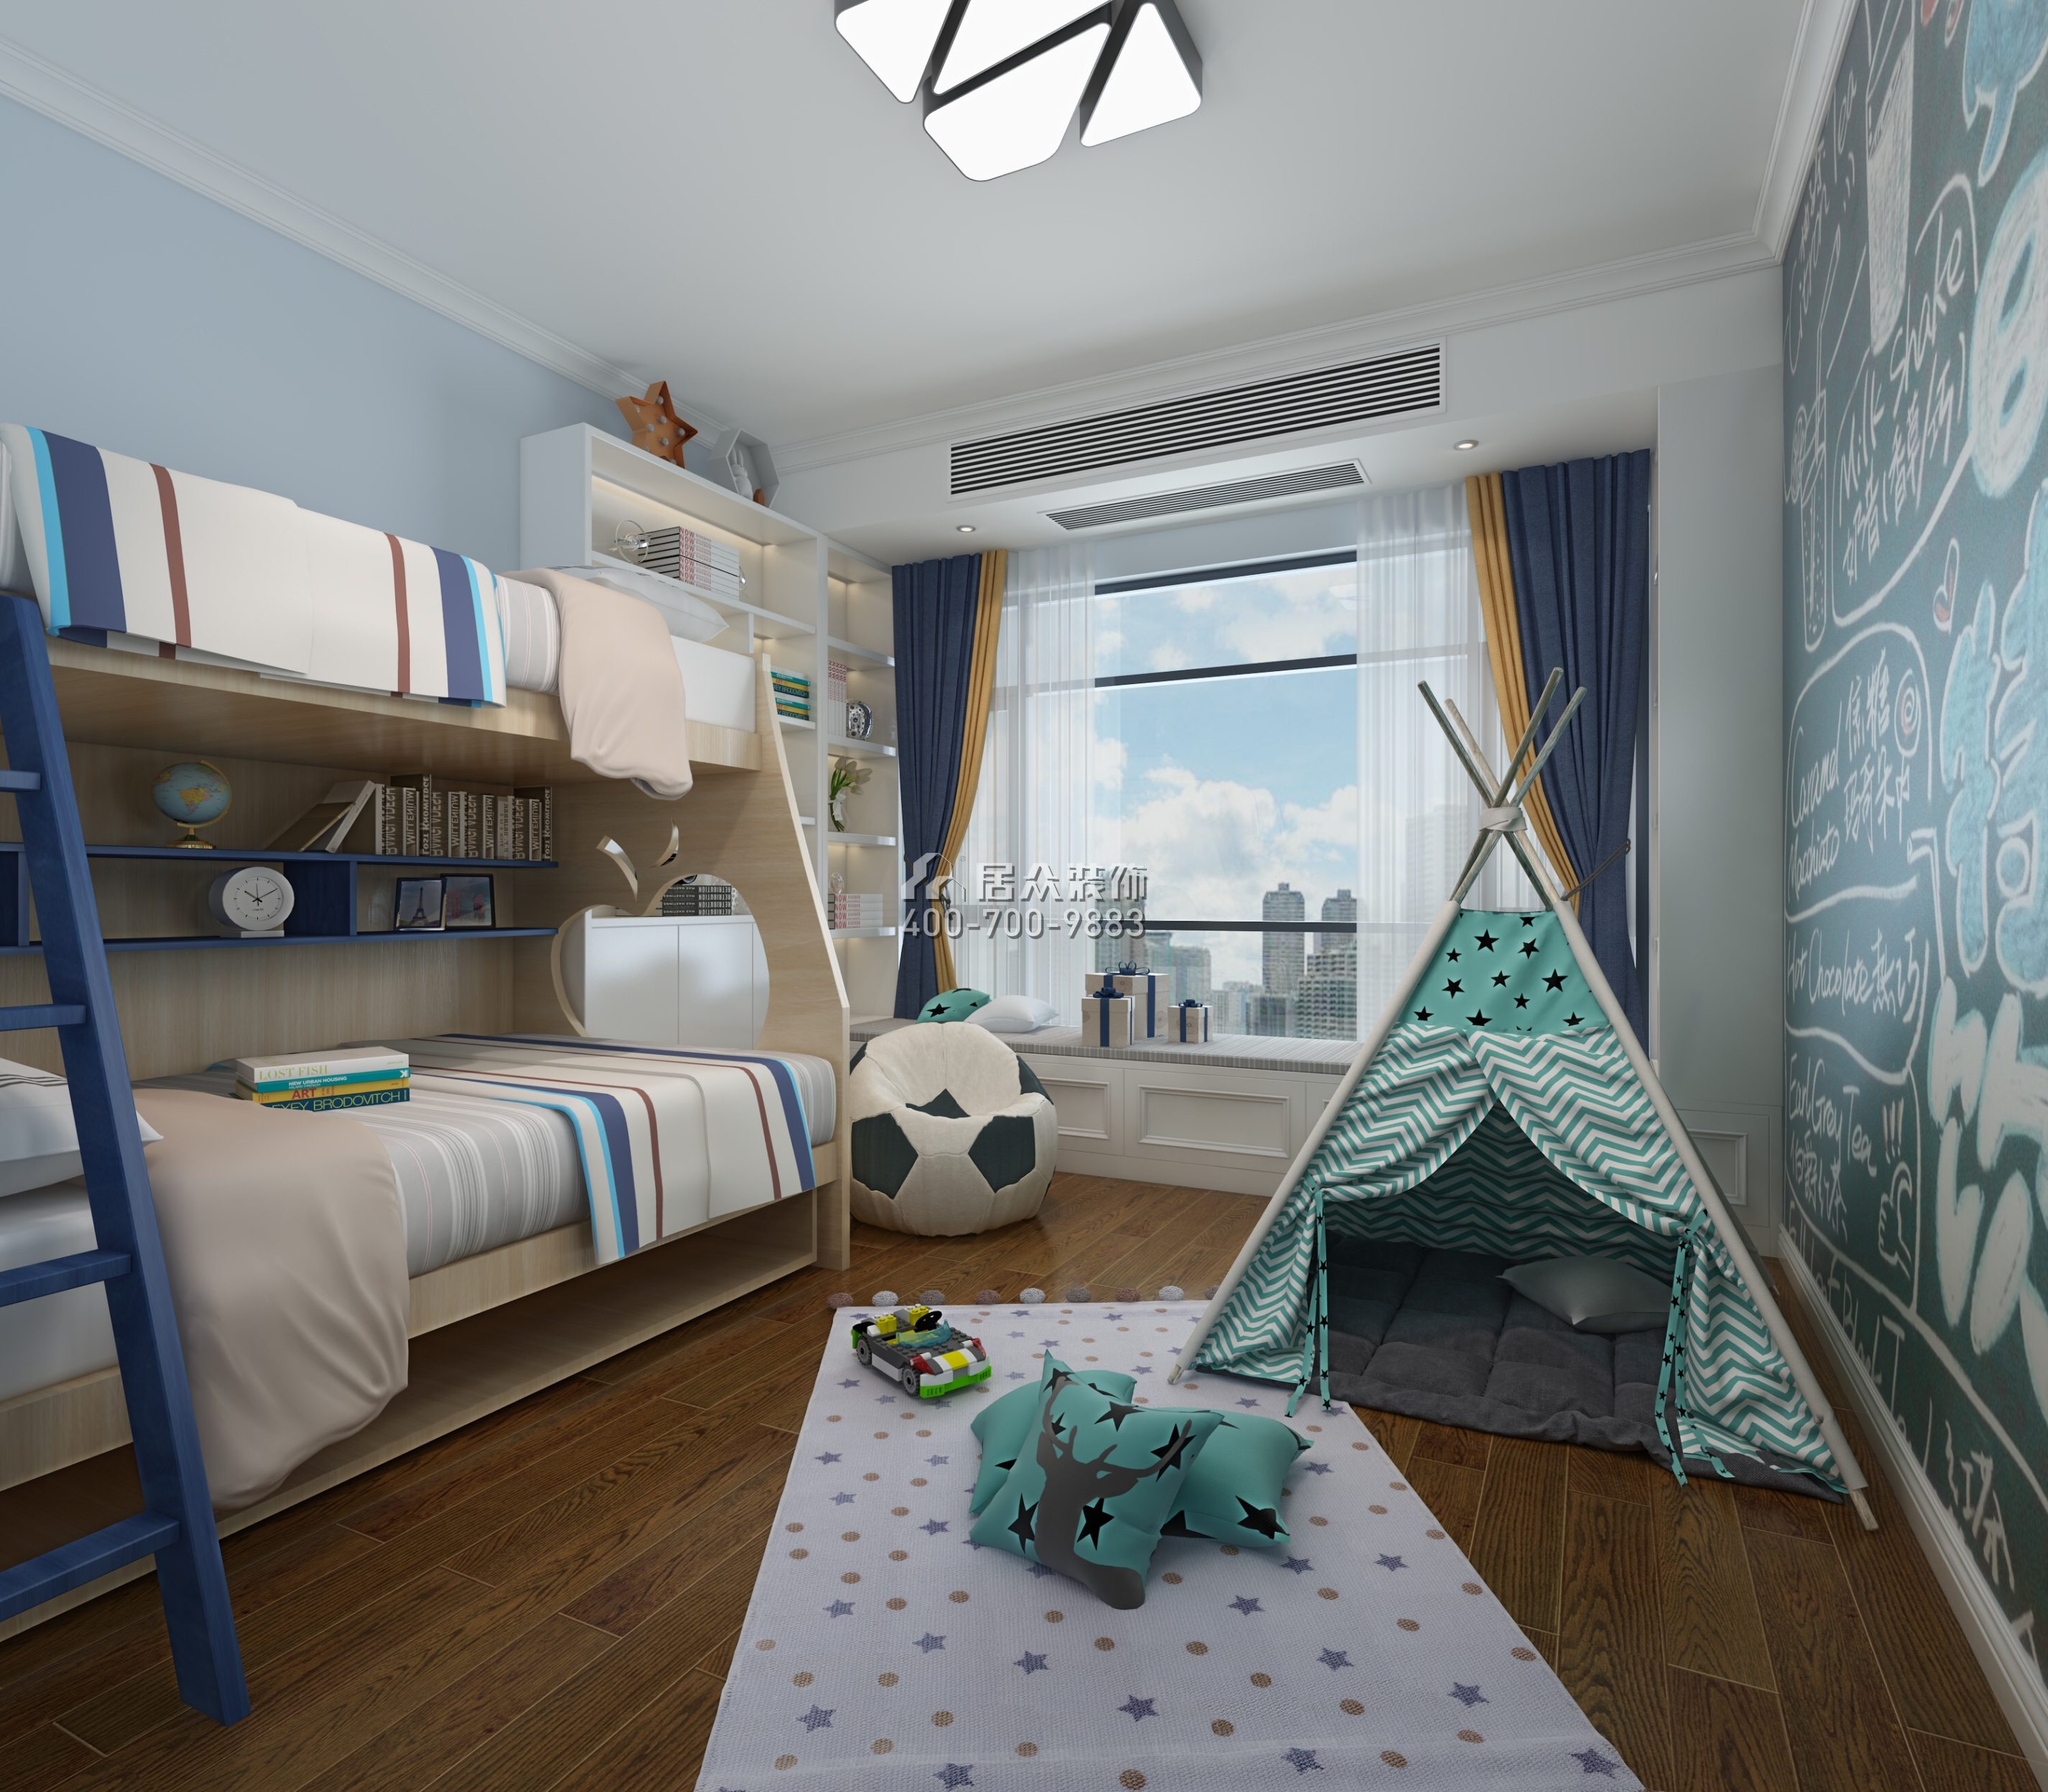 方直珑湖湾163平方米中式风格平层户型儿童房装修效果图